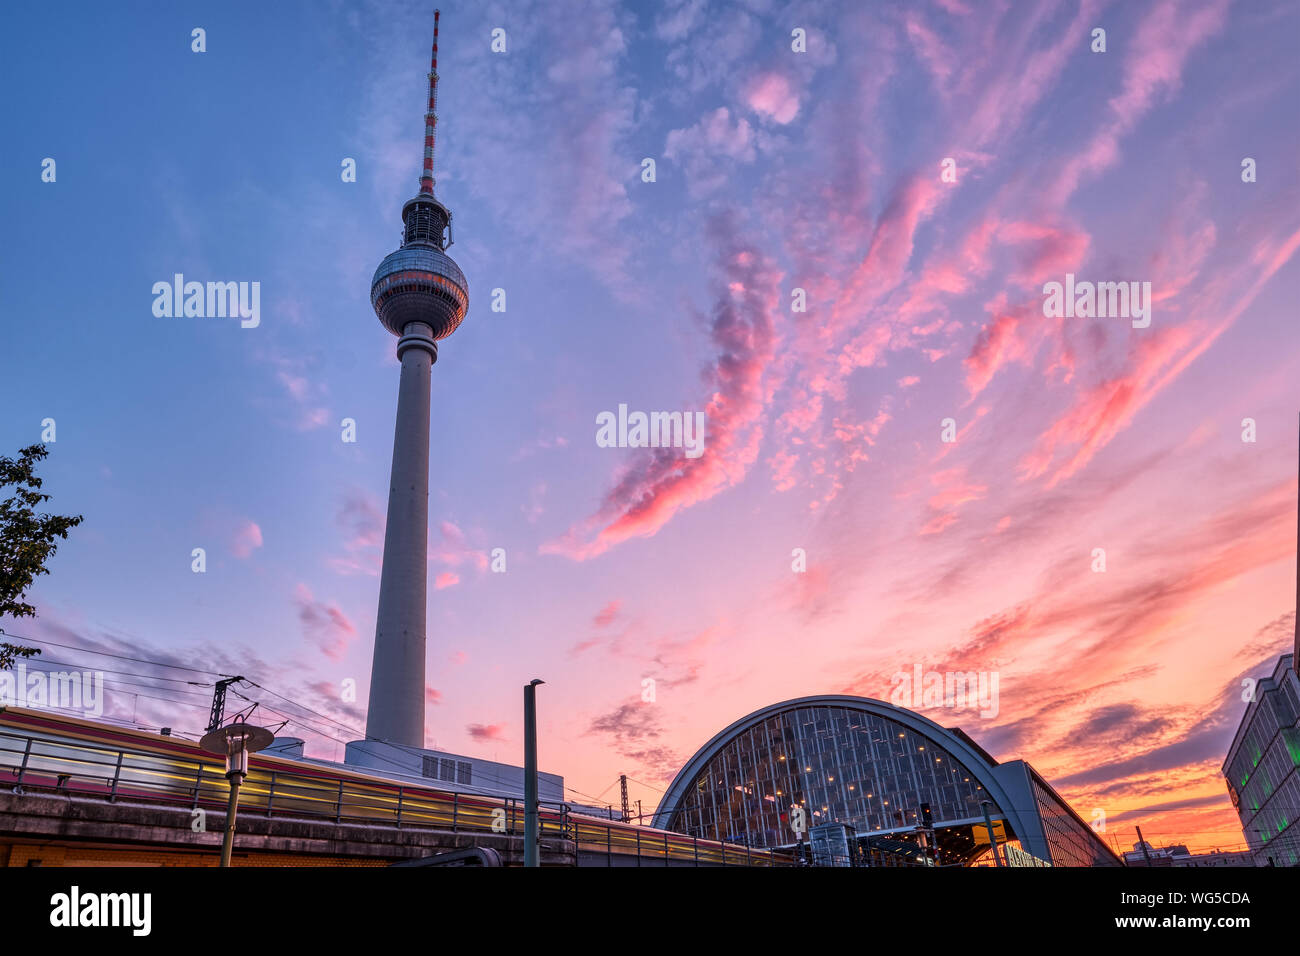 Zug mit Motion Blur und den berühmten Fernsehturm in Berlin bei Sonnenuntergang Stockfoto